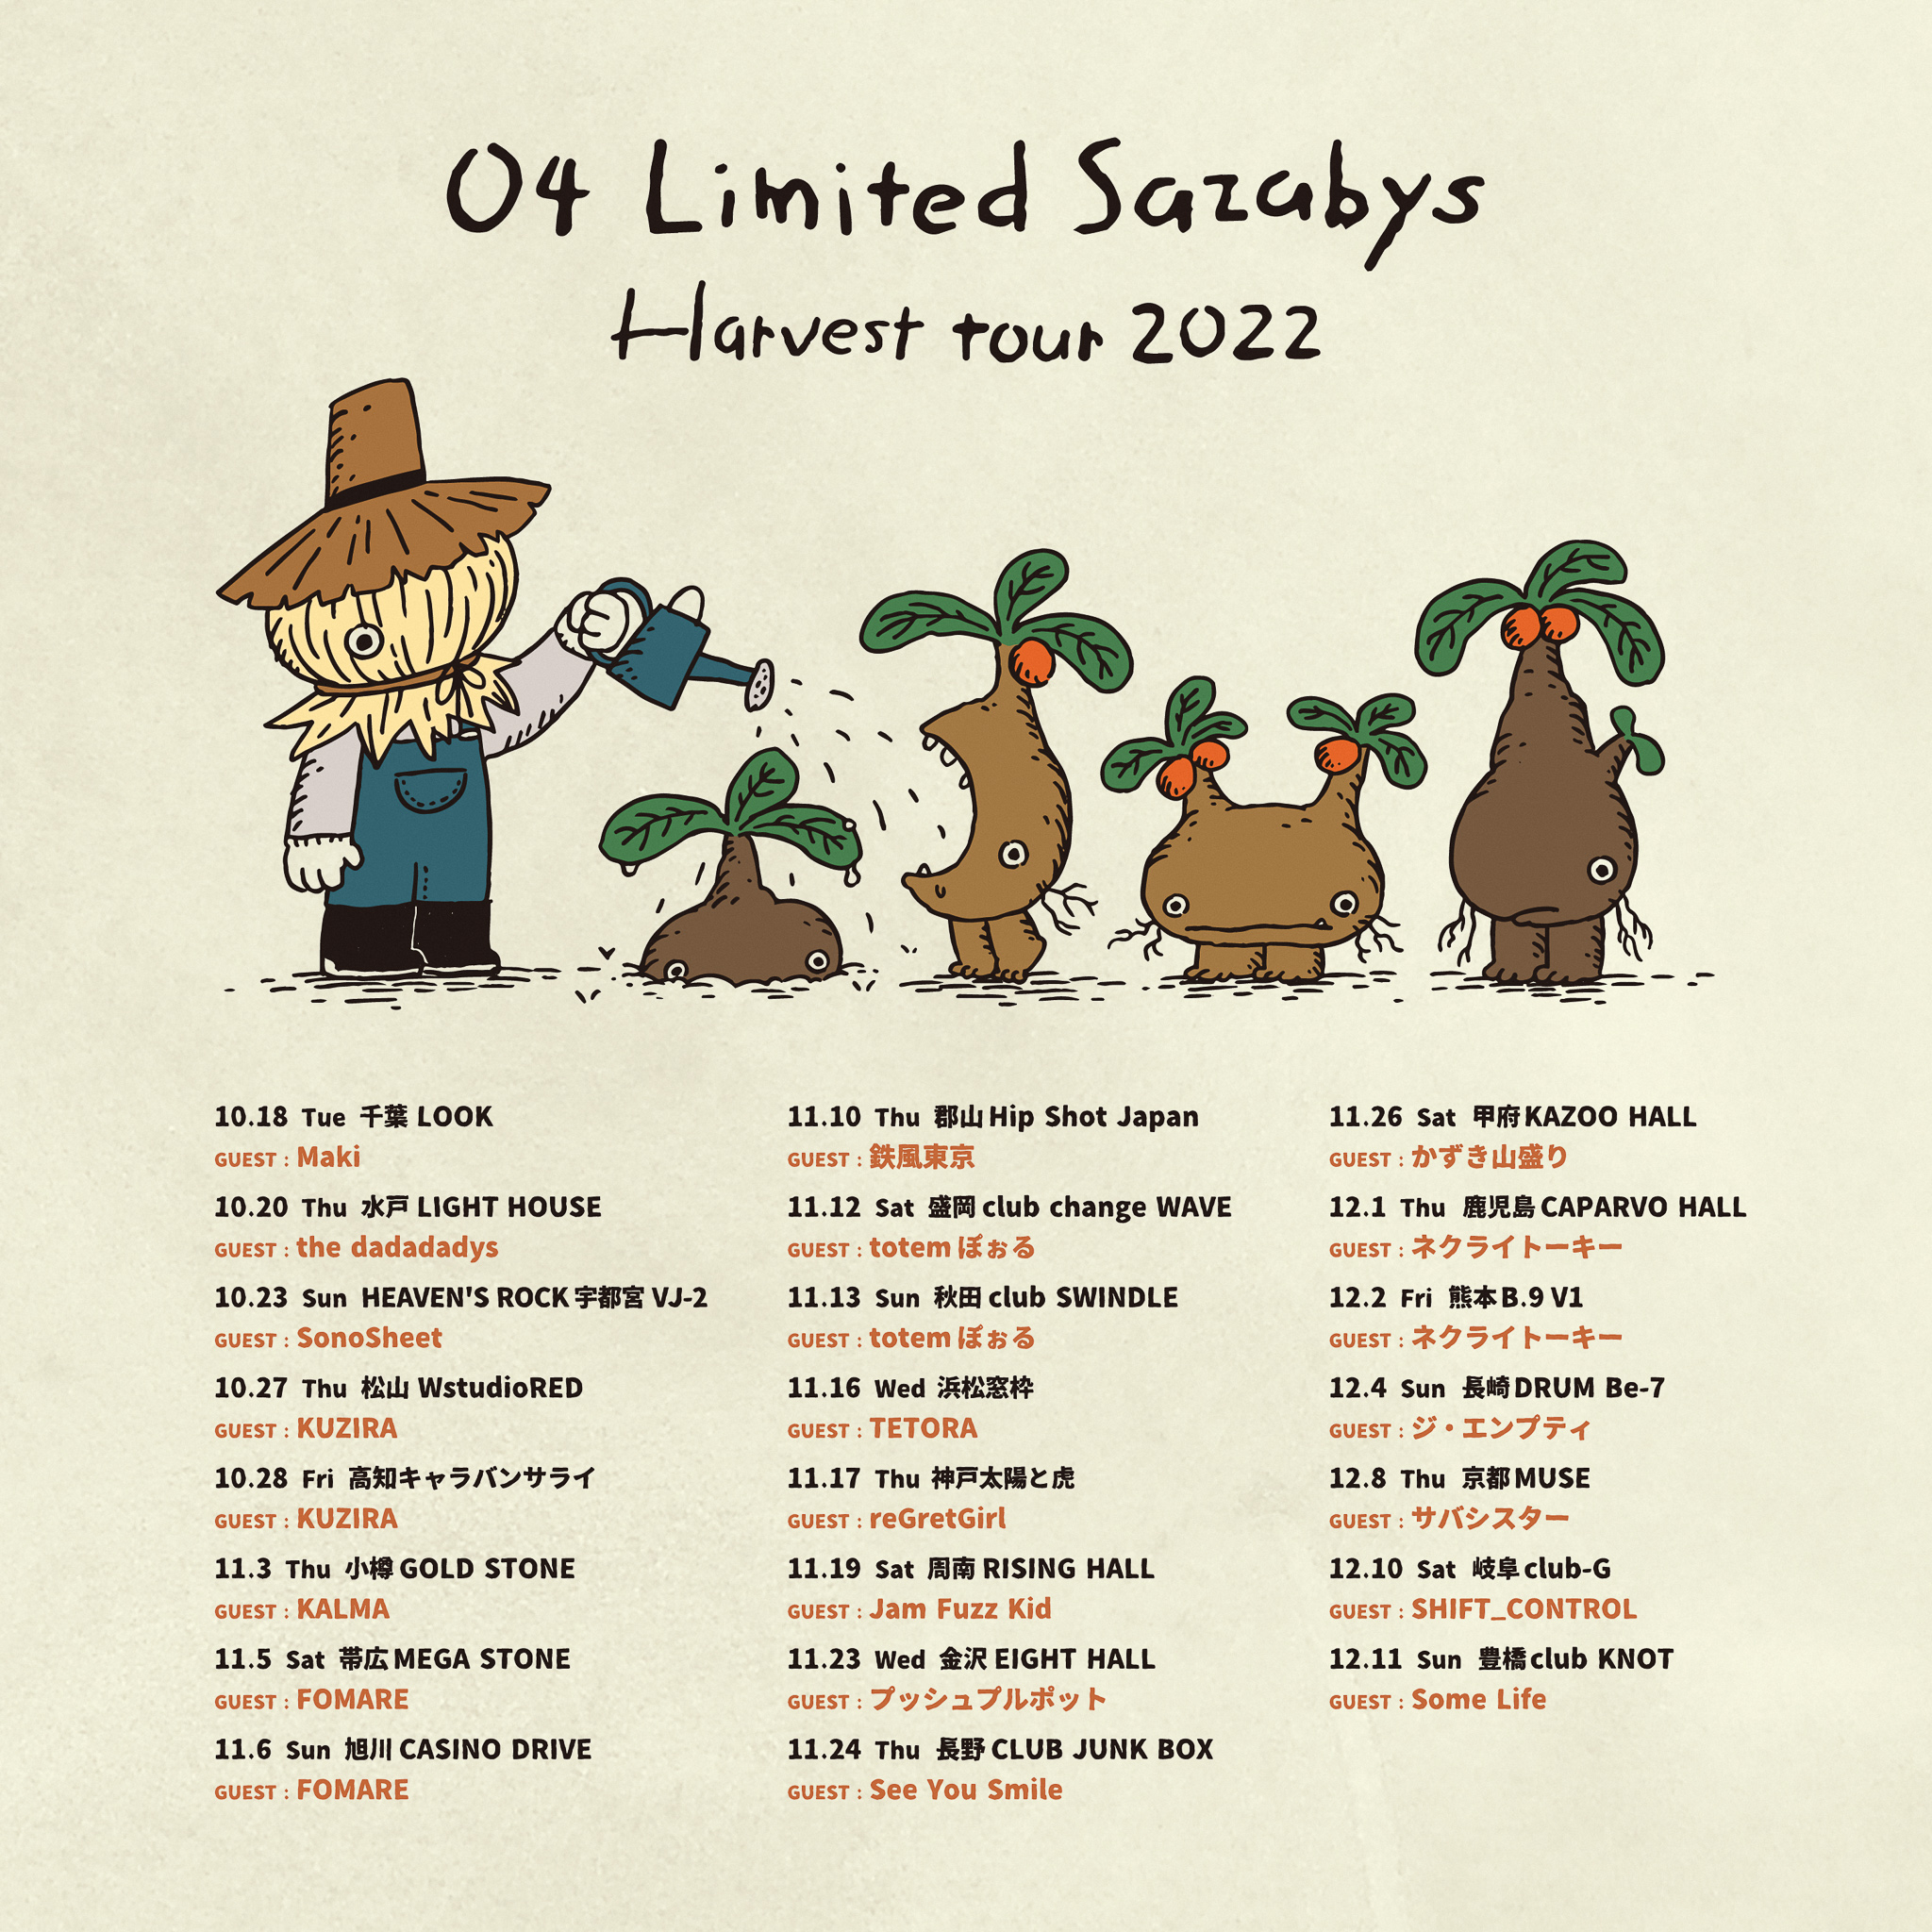 【福島】04 Limited Sazabys "Harvest tour 2022" (郡山Hip Shot Japan)